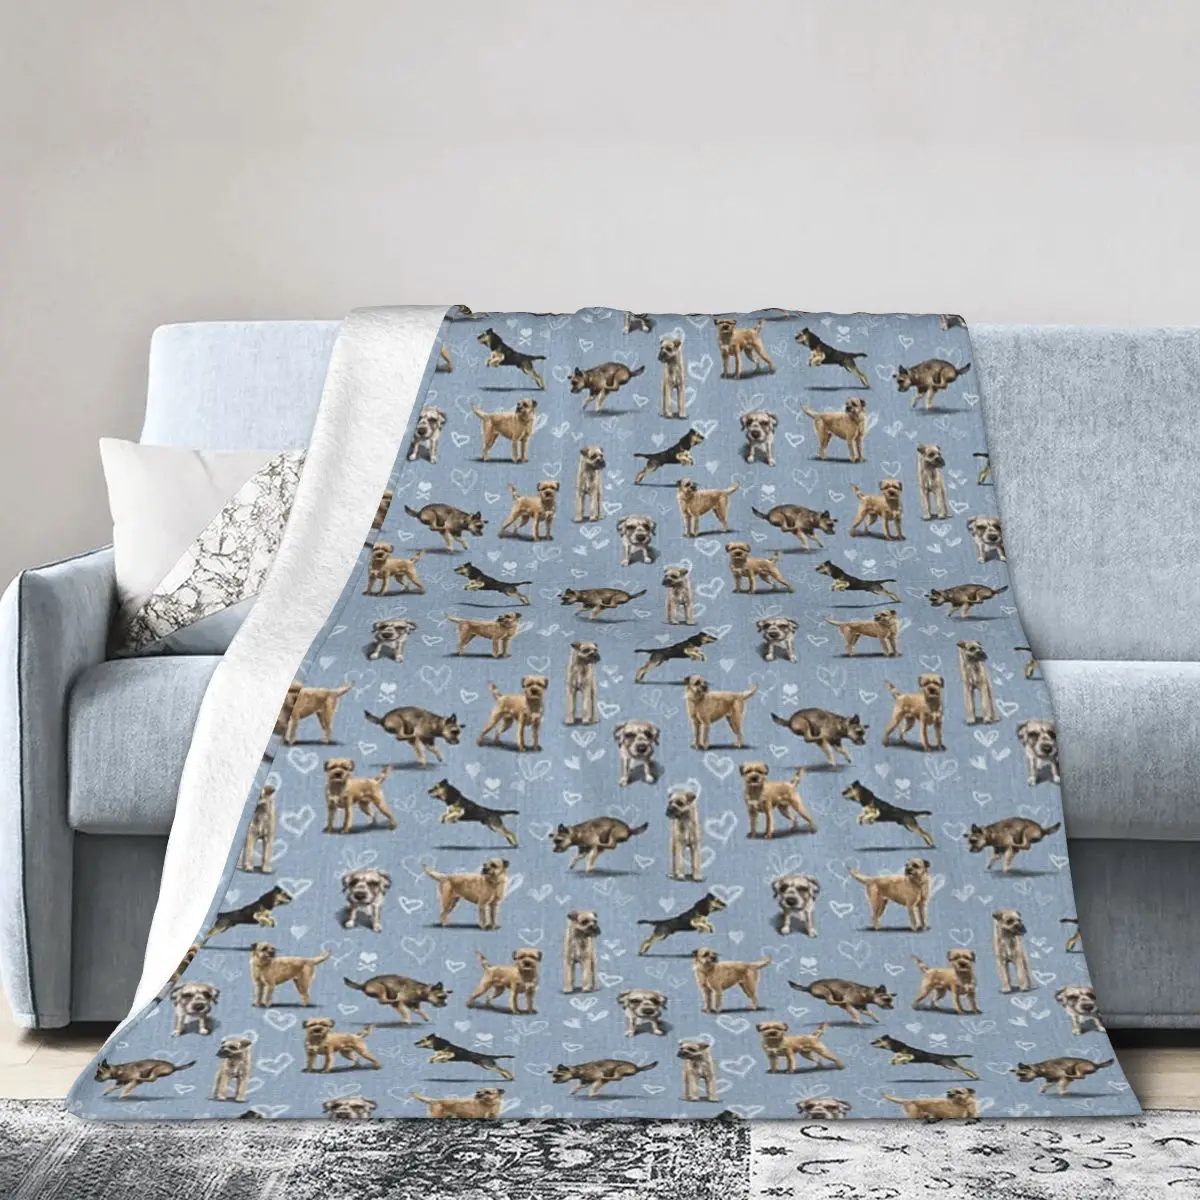 

Фланелевое Одеяло The Border Terrier одеяла мягкое постельное белье теплое плюшевое одеяло для кровати гостиной пикника путешествия дома дивана